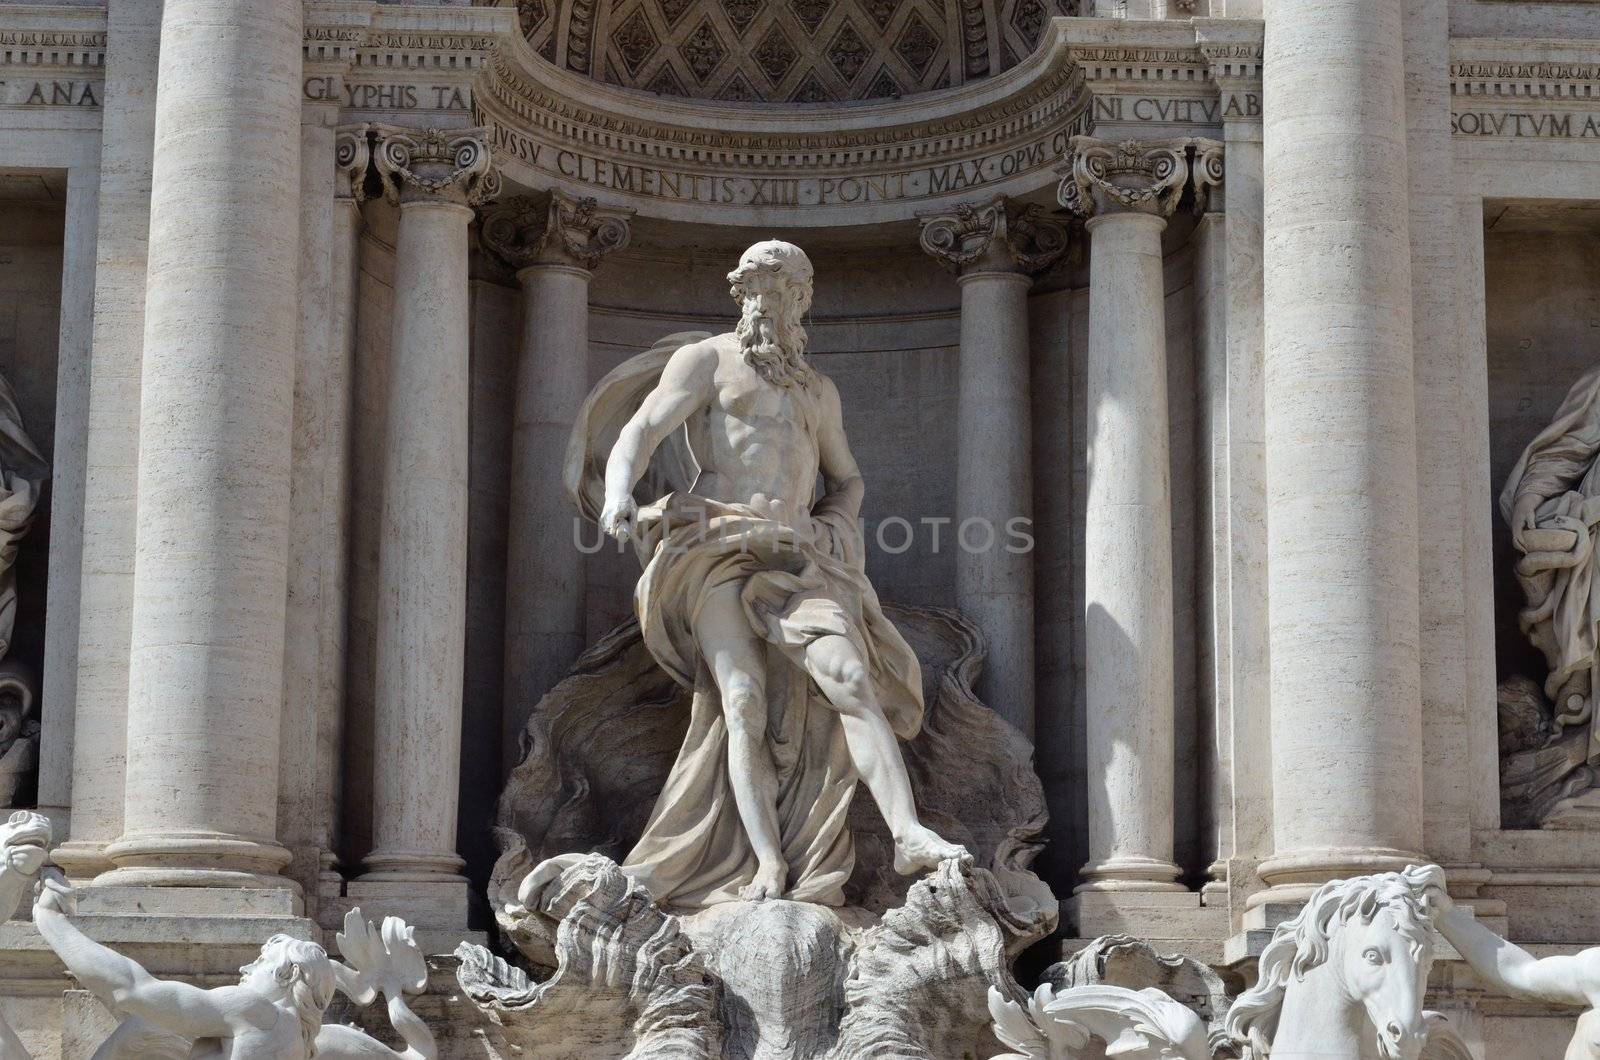 Neptune's Statue, Trevi Fountain by marcorubino